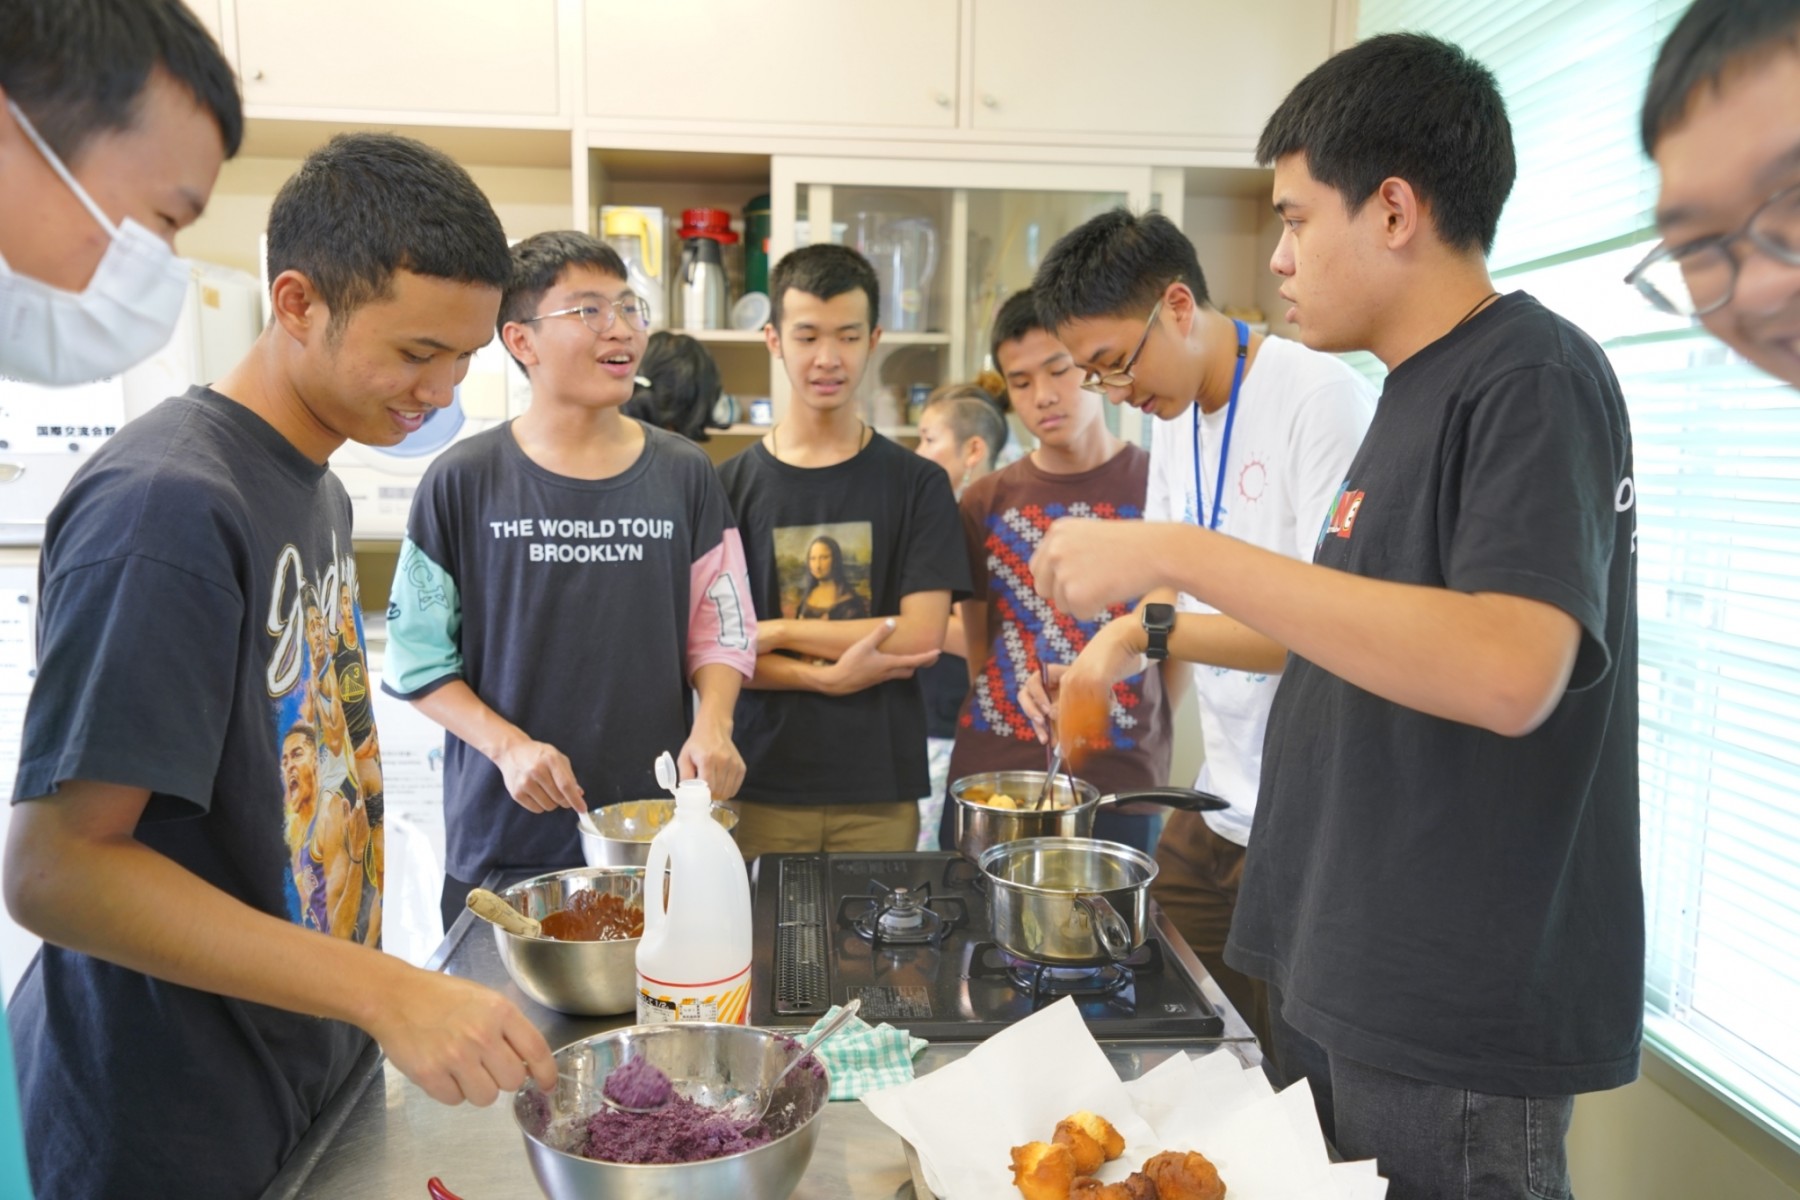 タイ高専KMITL研修生と本校留学生合同での日本料理講習会が行われましたの写真